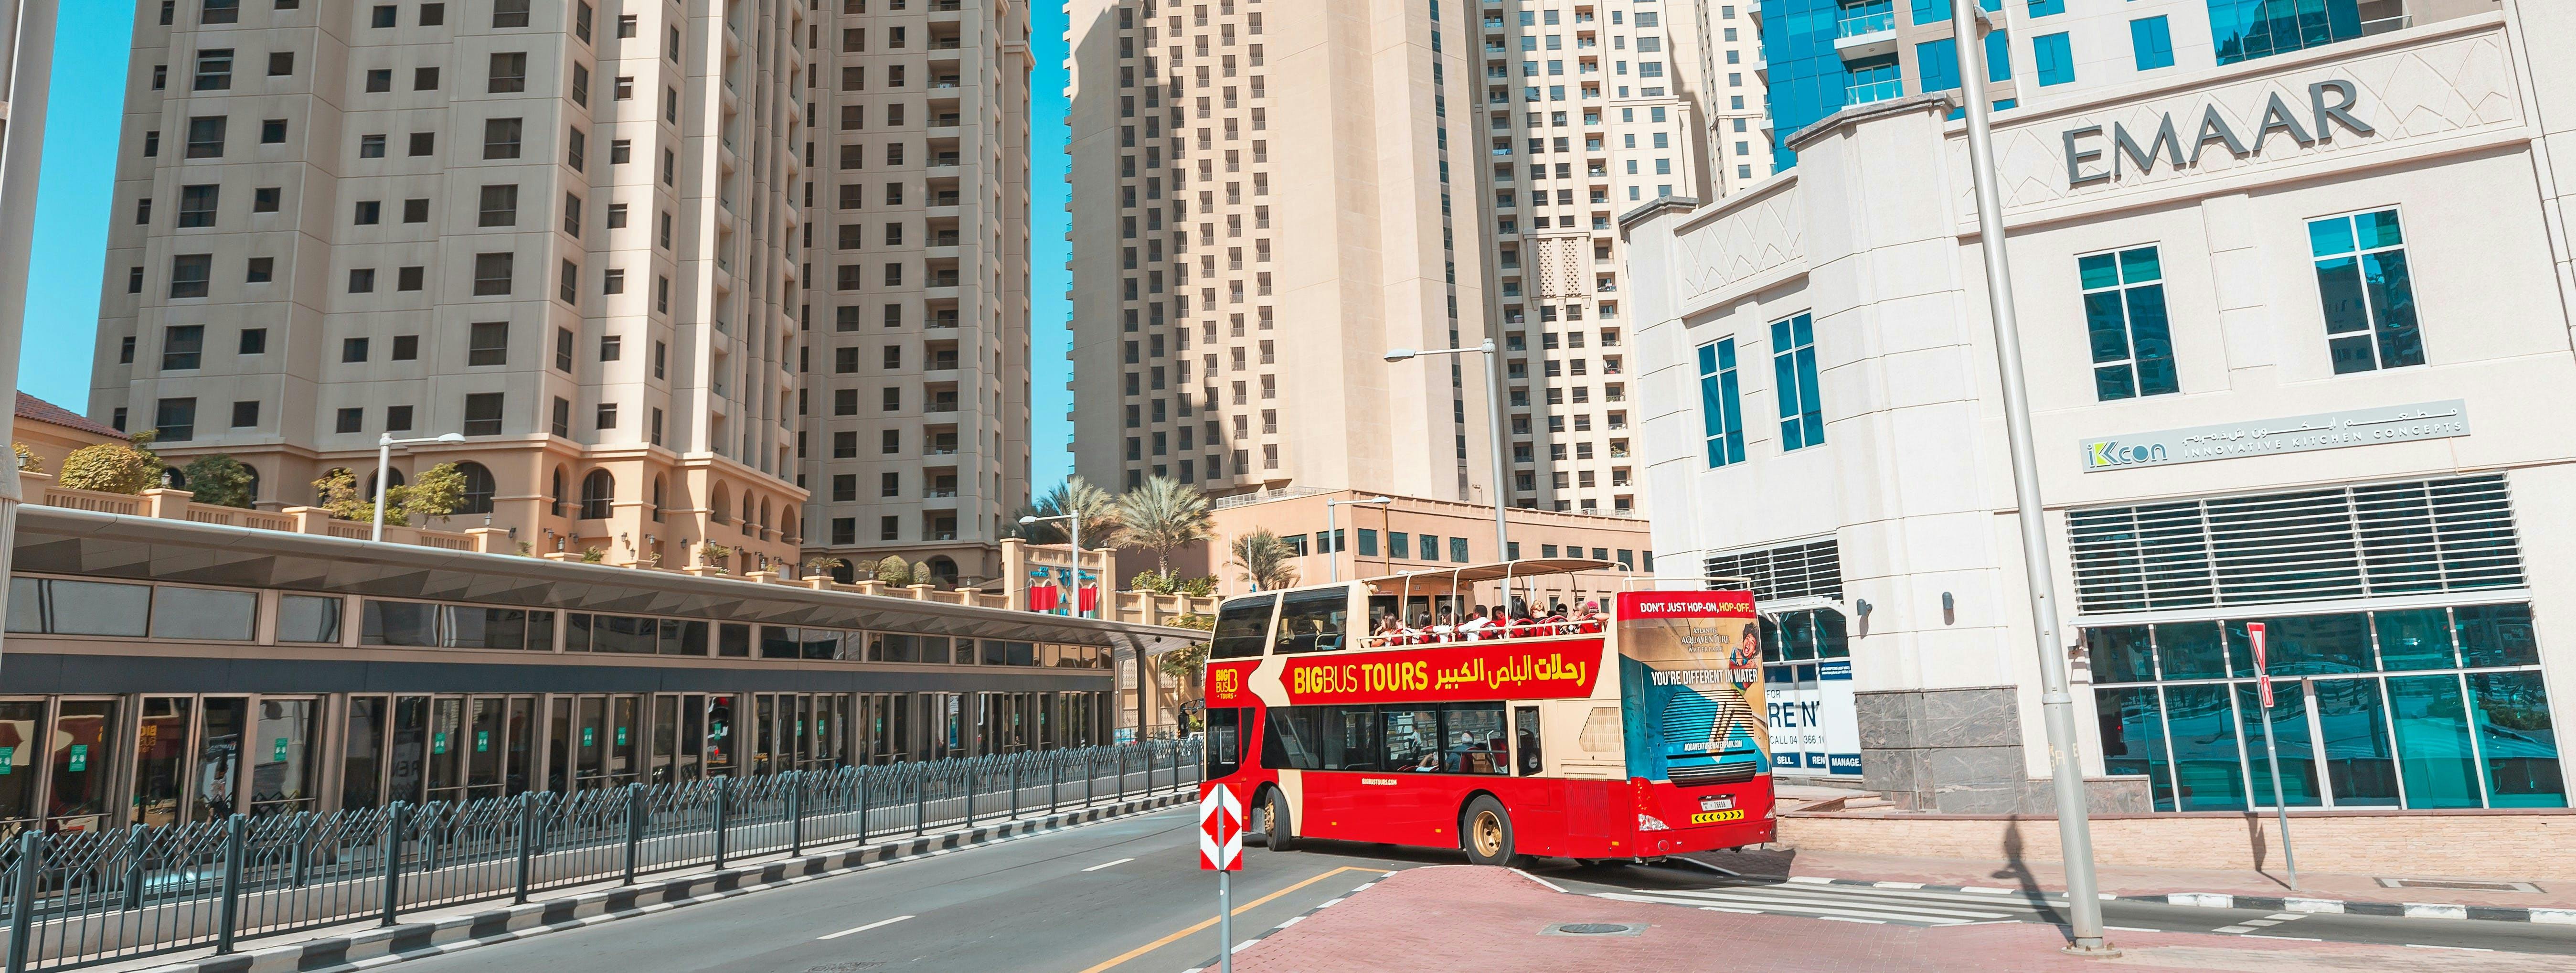 Visite en Big Bus de Dubaï